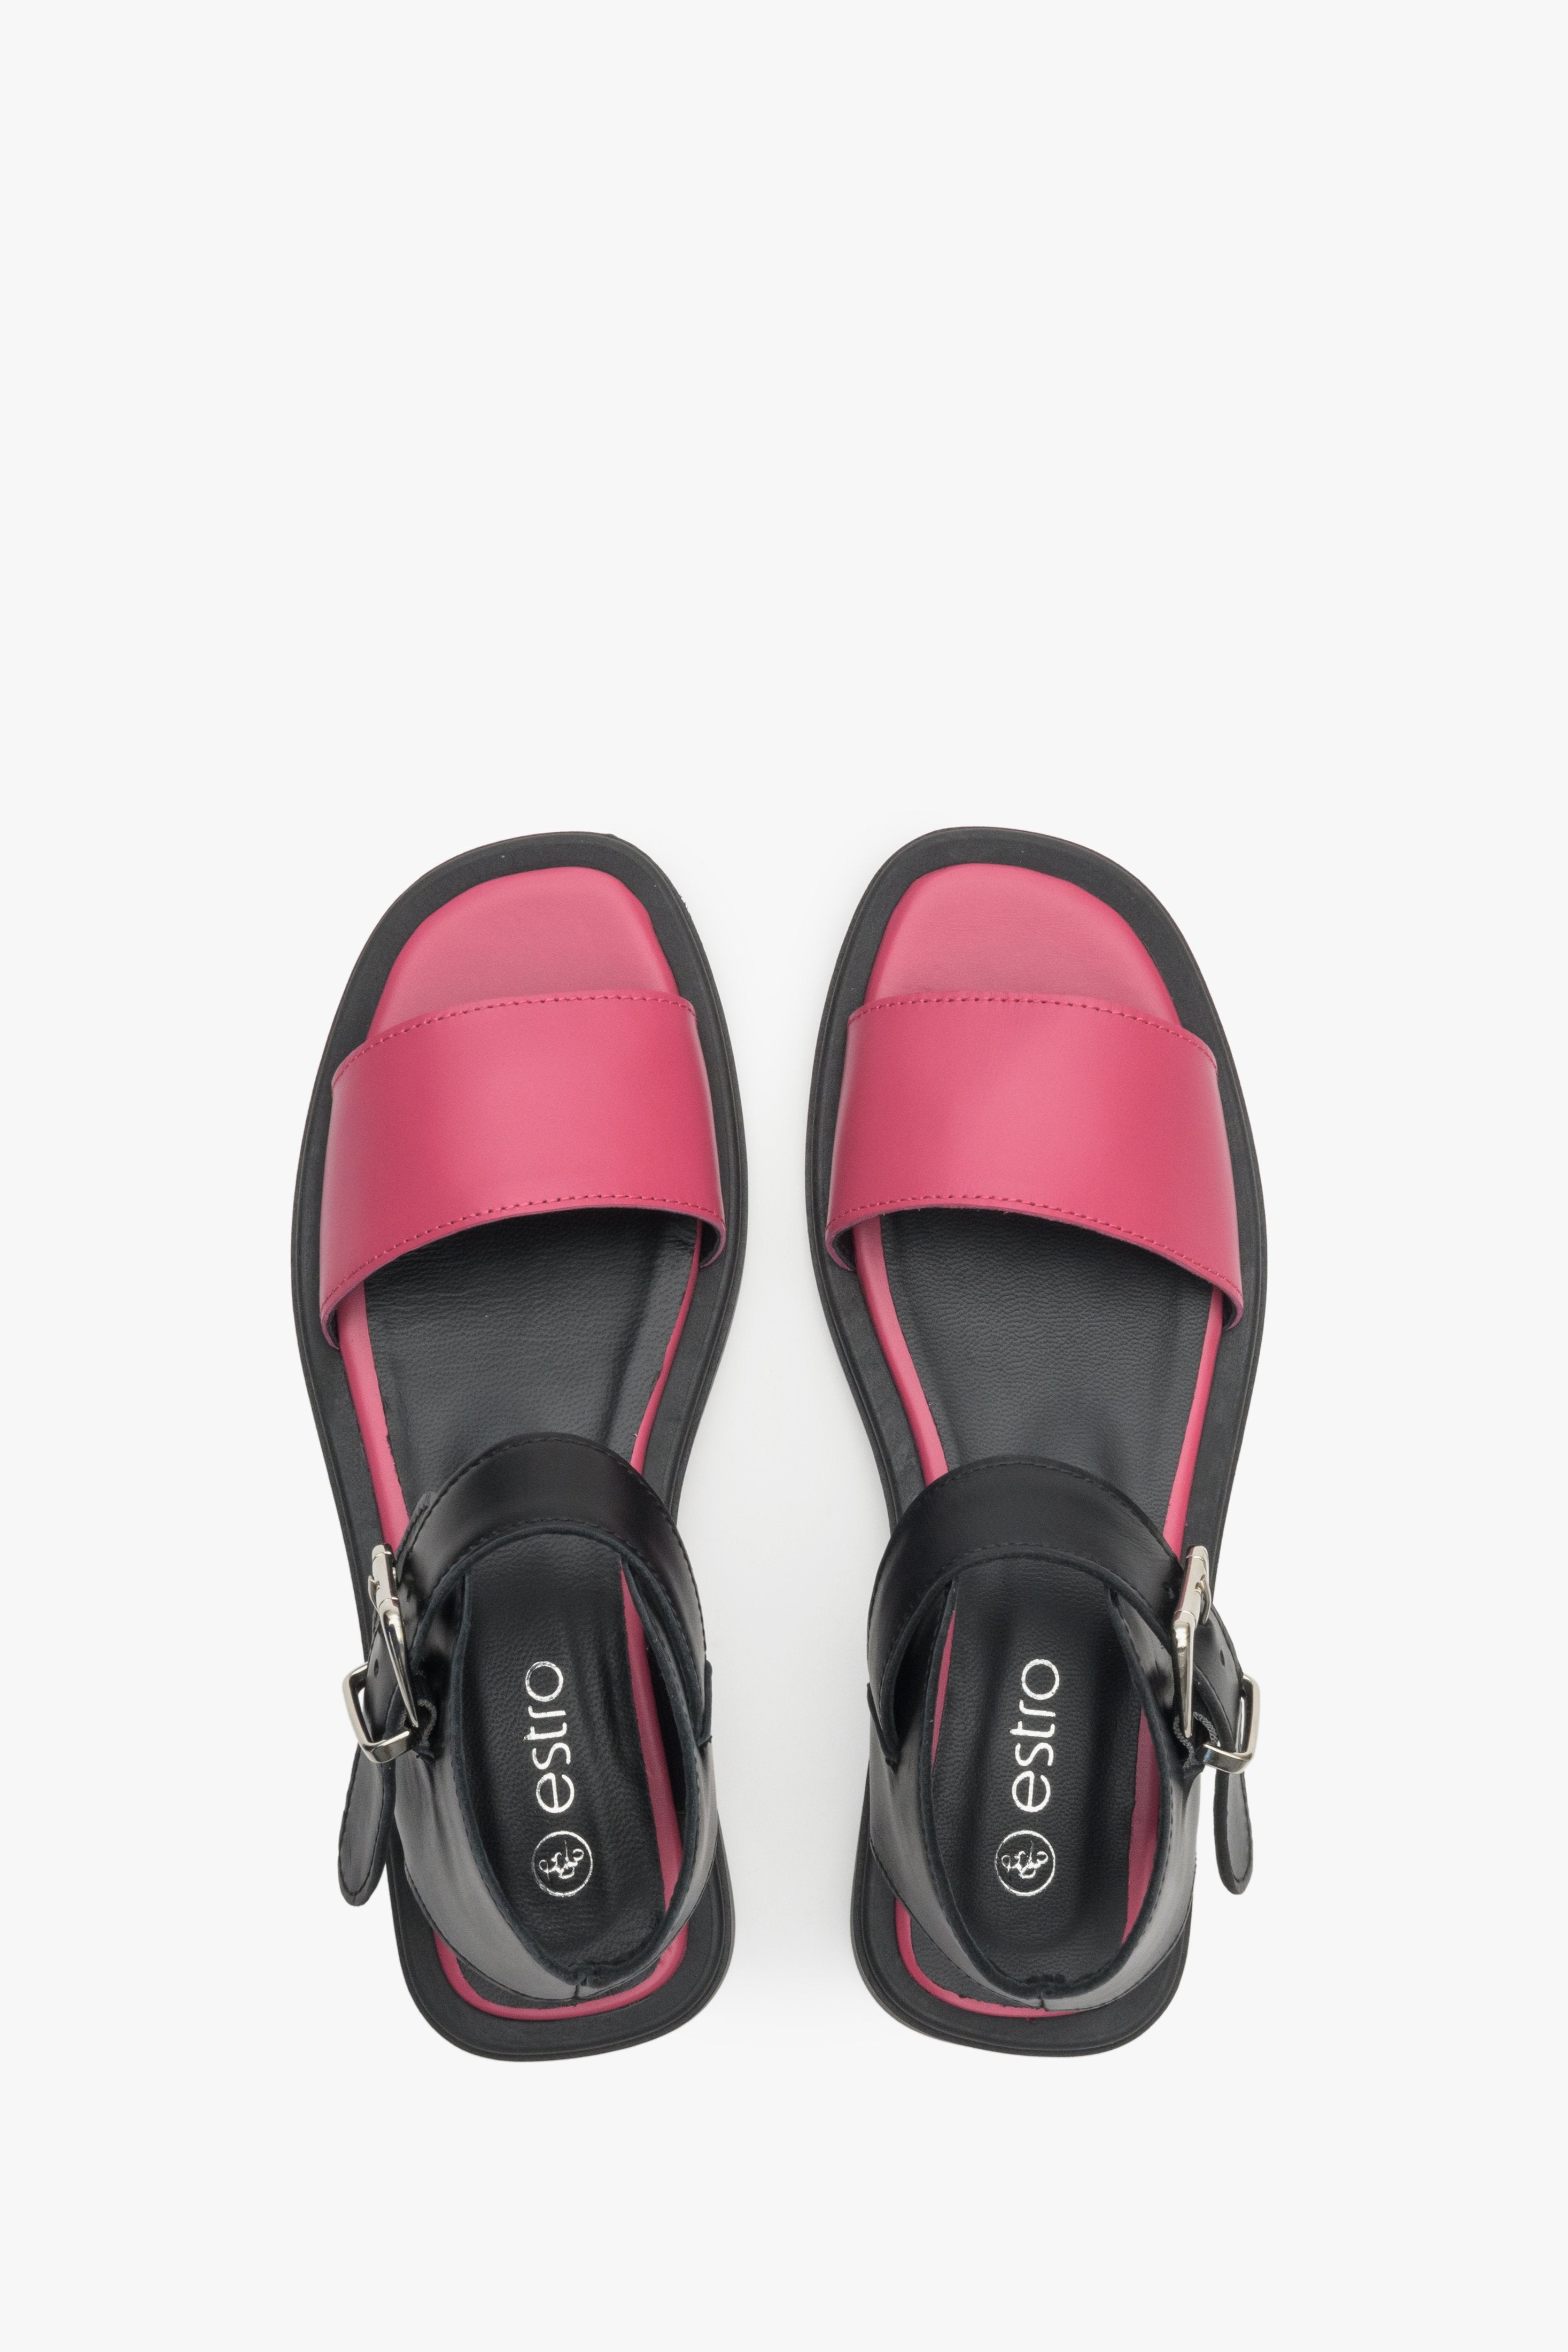 Miękkie sandały damskie z włoskiej skóry naturalnej w kolorze czarno-różowym Estro: prezentacja modelu z góry.